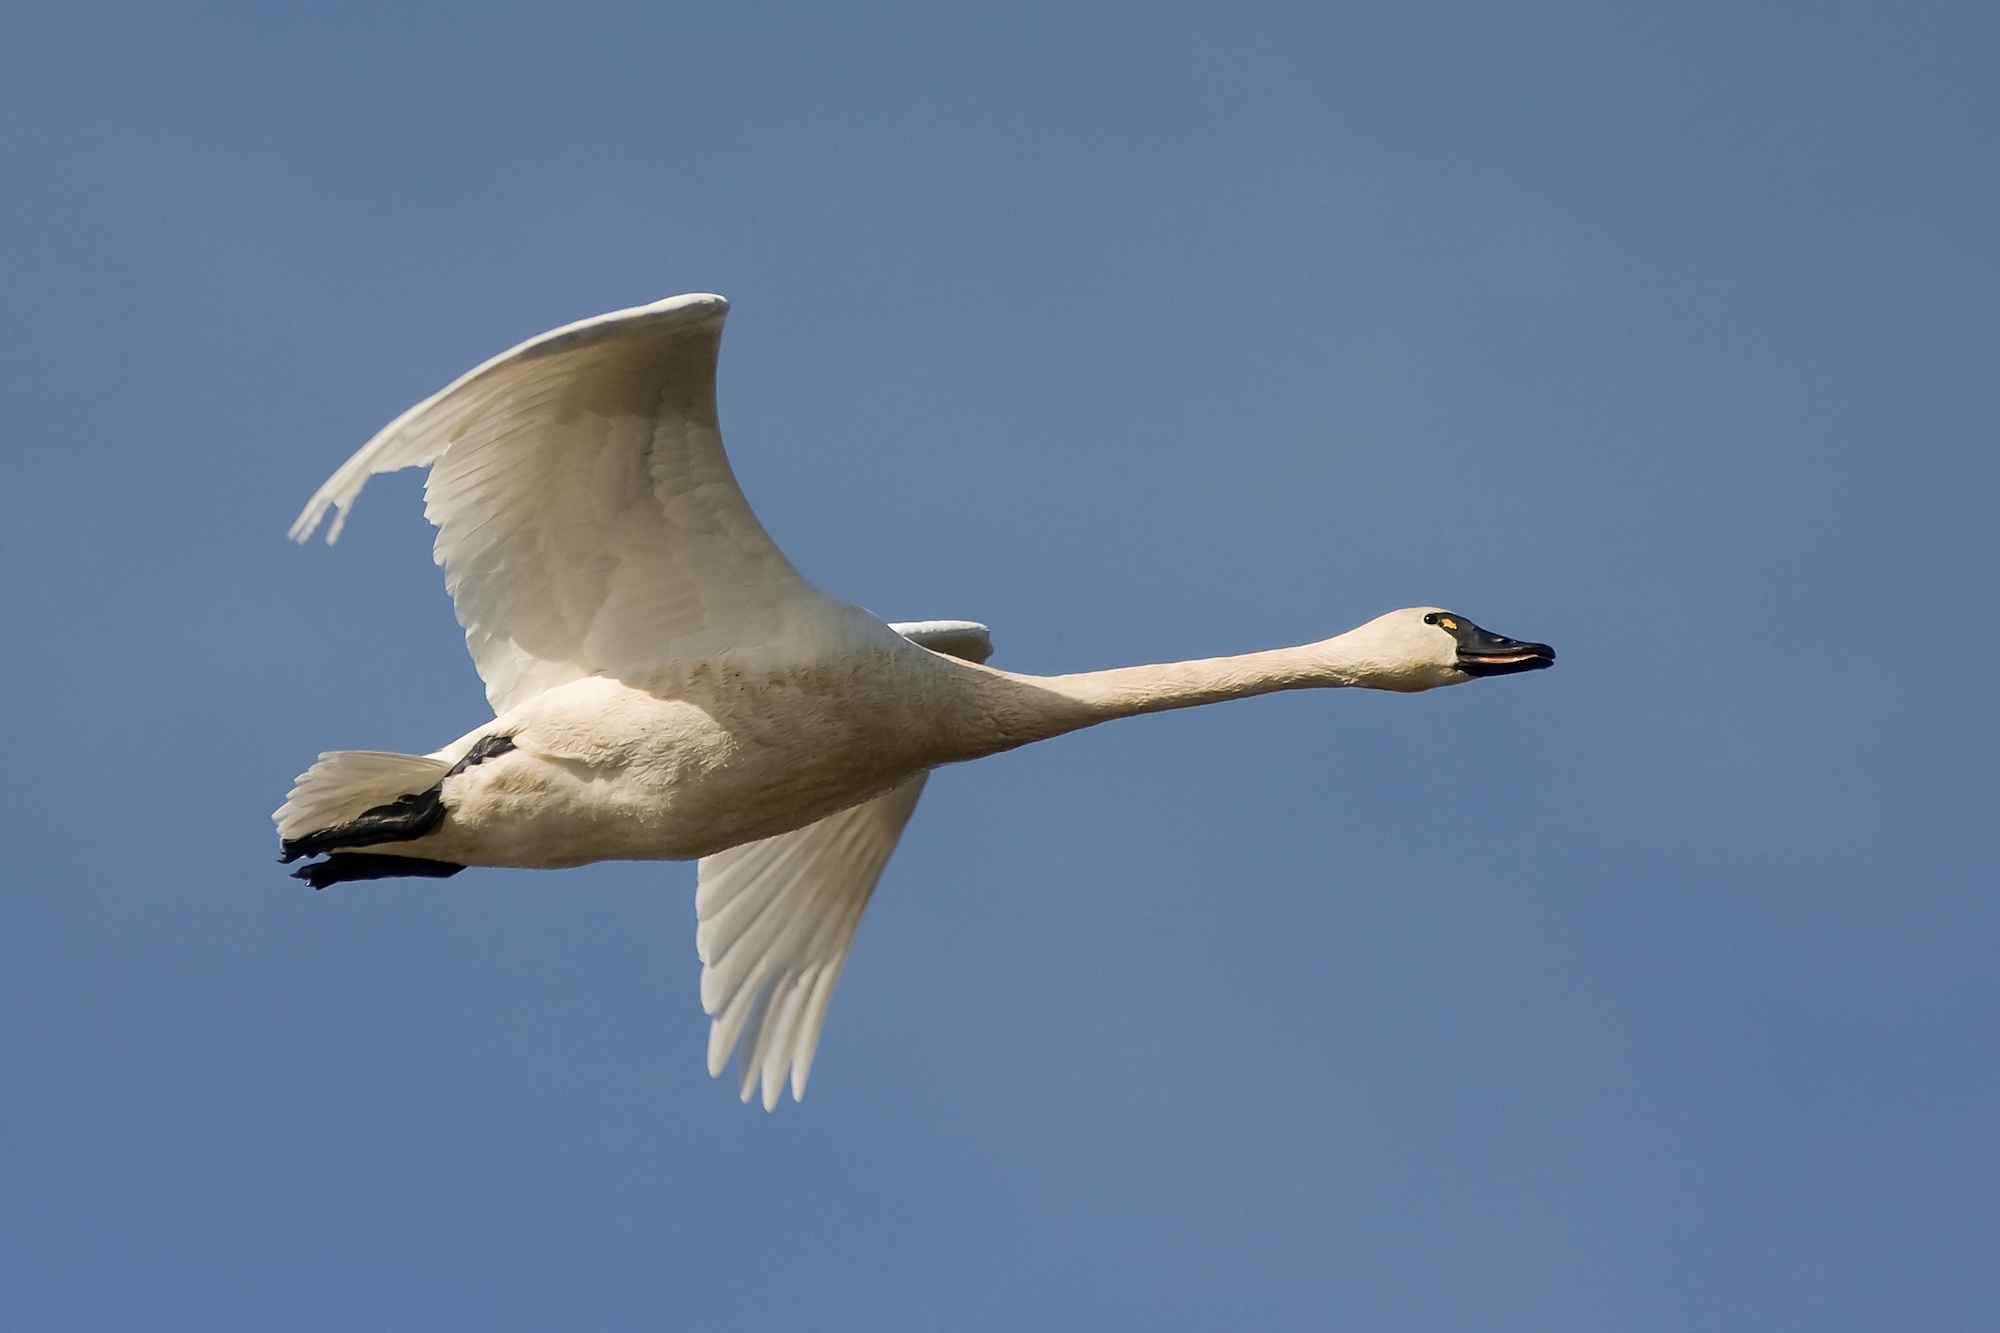 utah swan hunting proposal 2